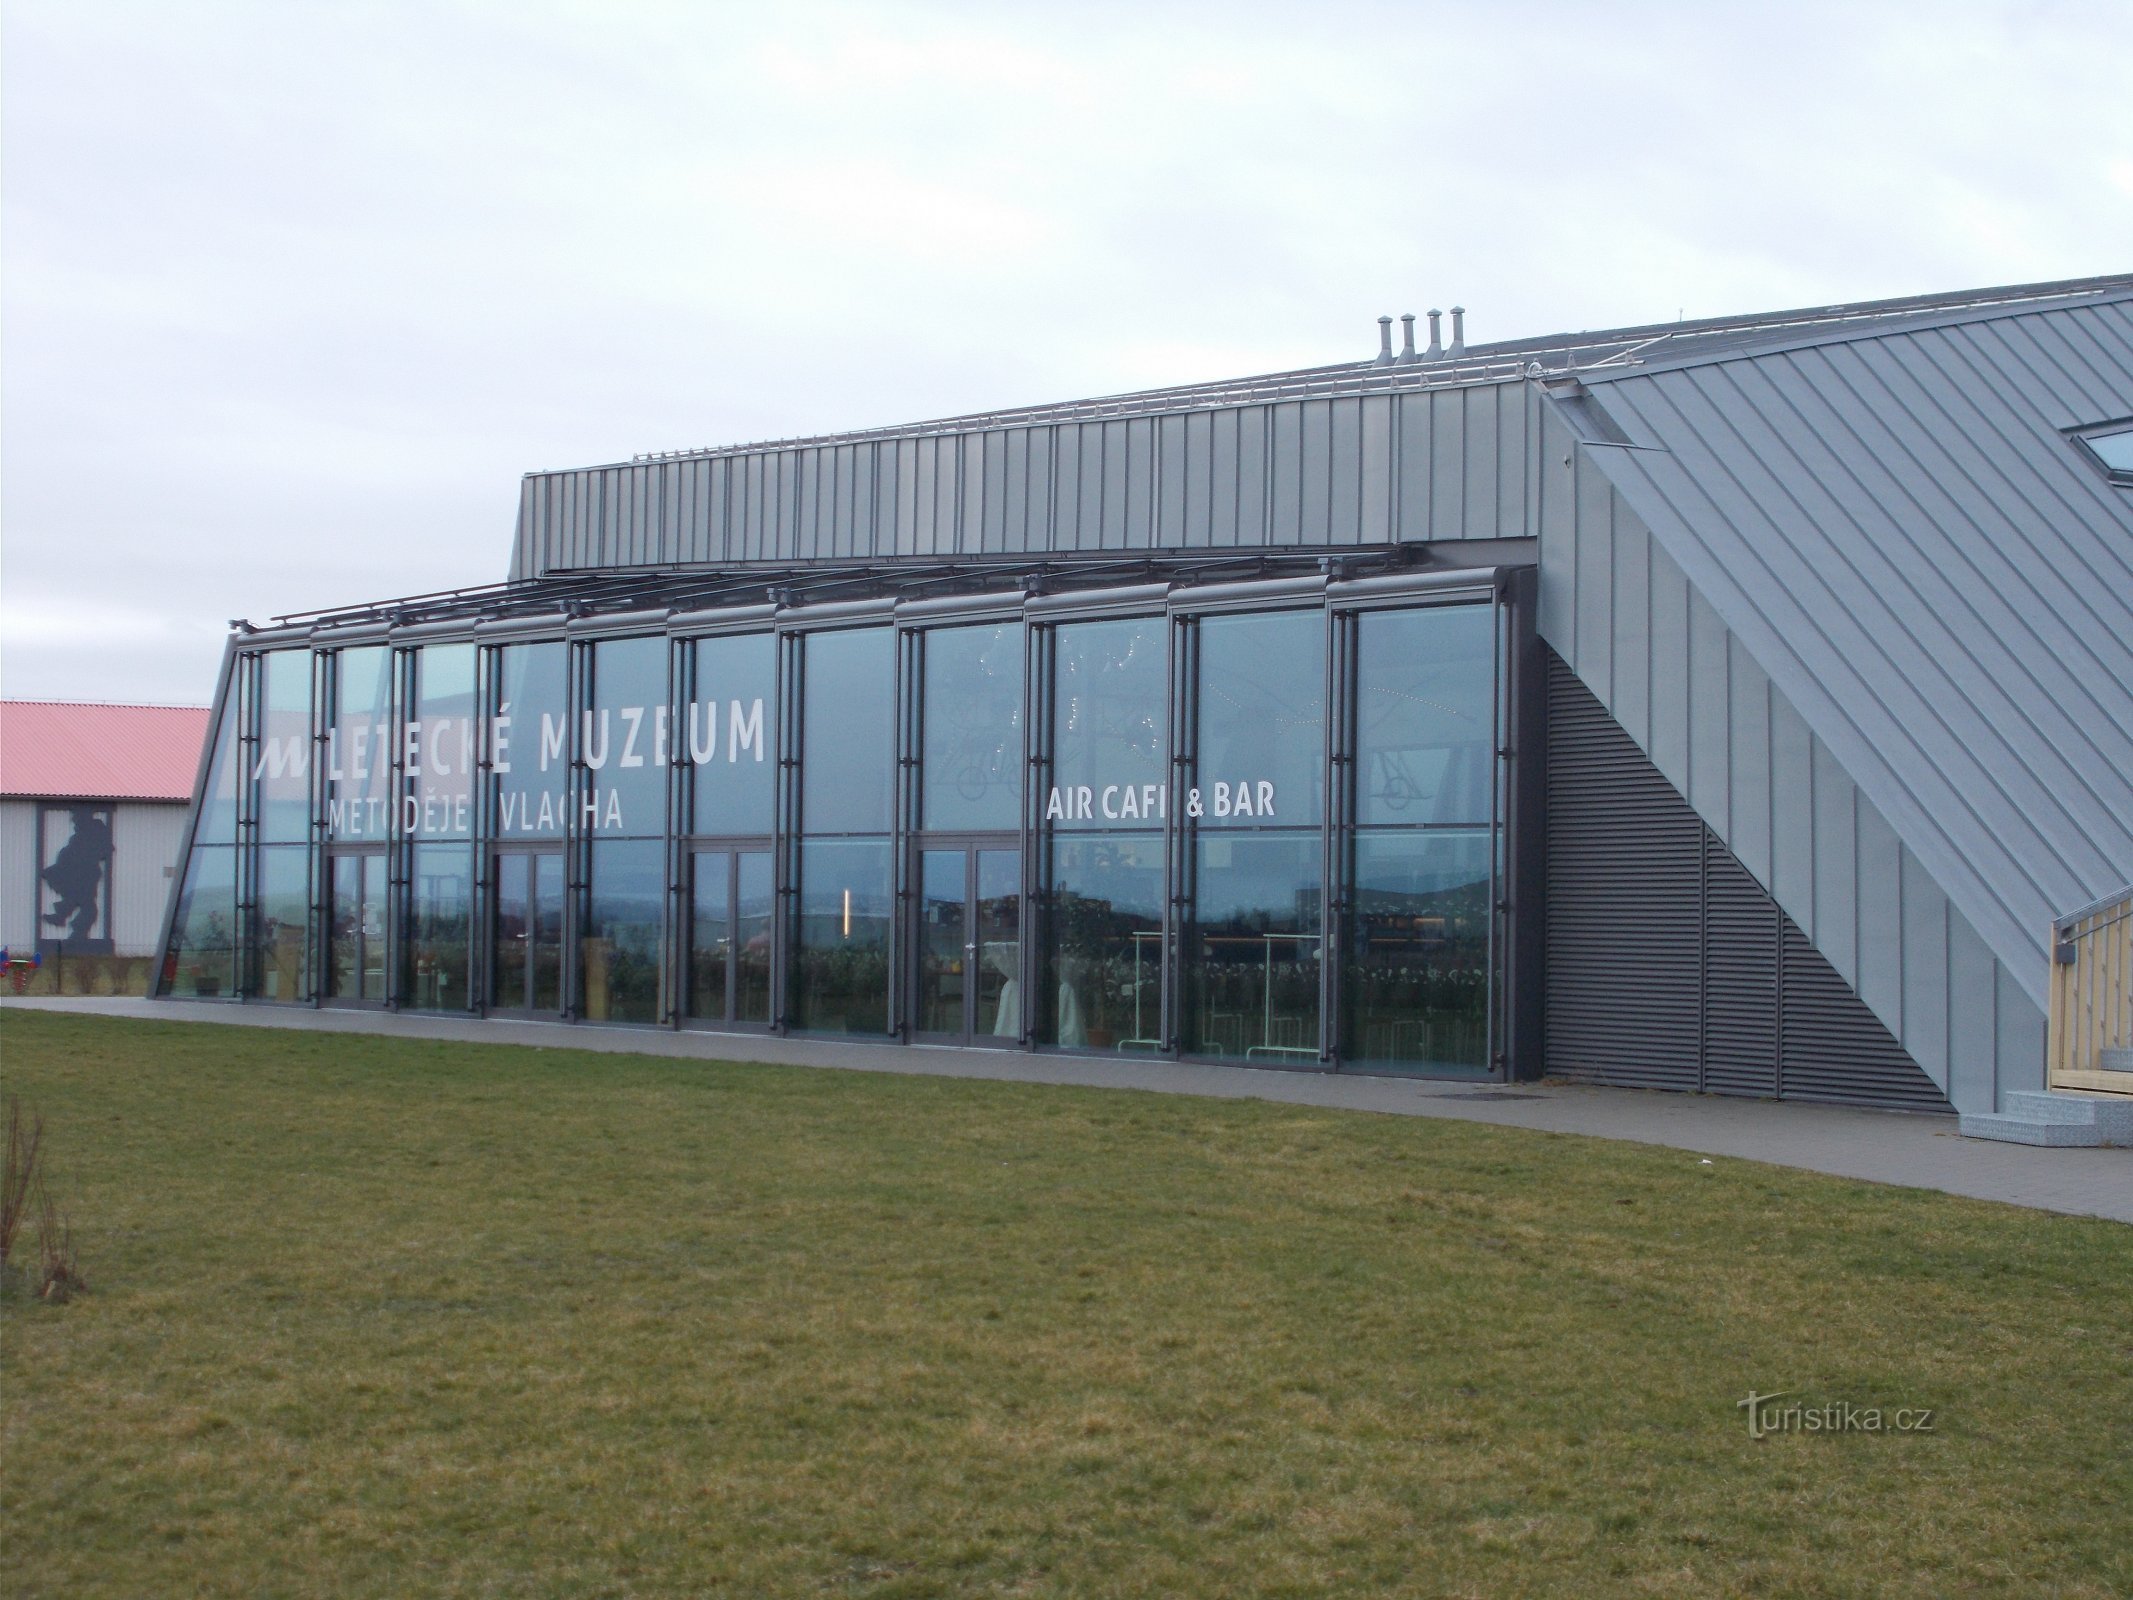 Muzeum Lotnictwa Metoděja Vlach